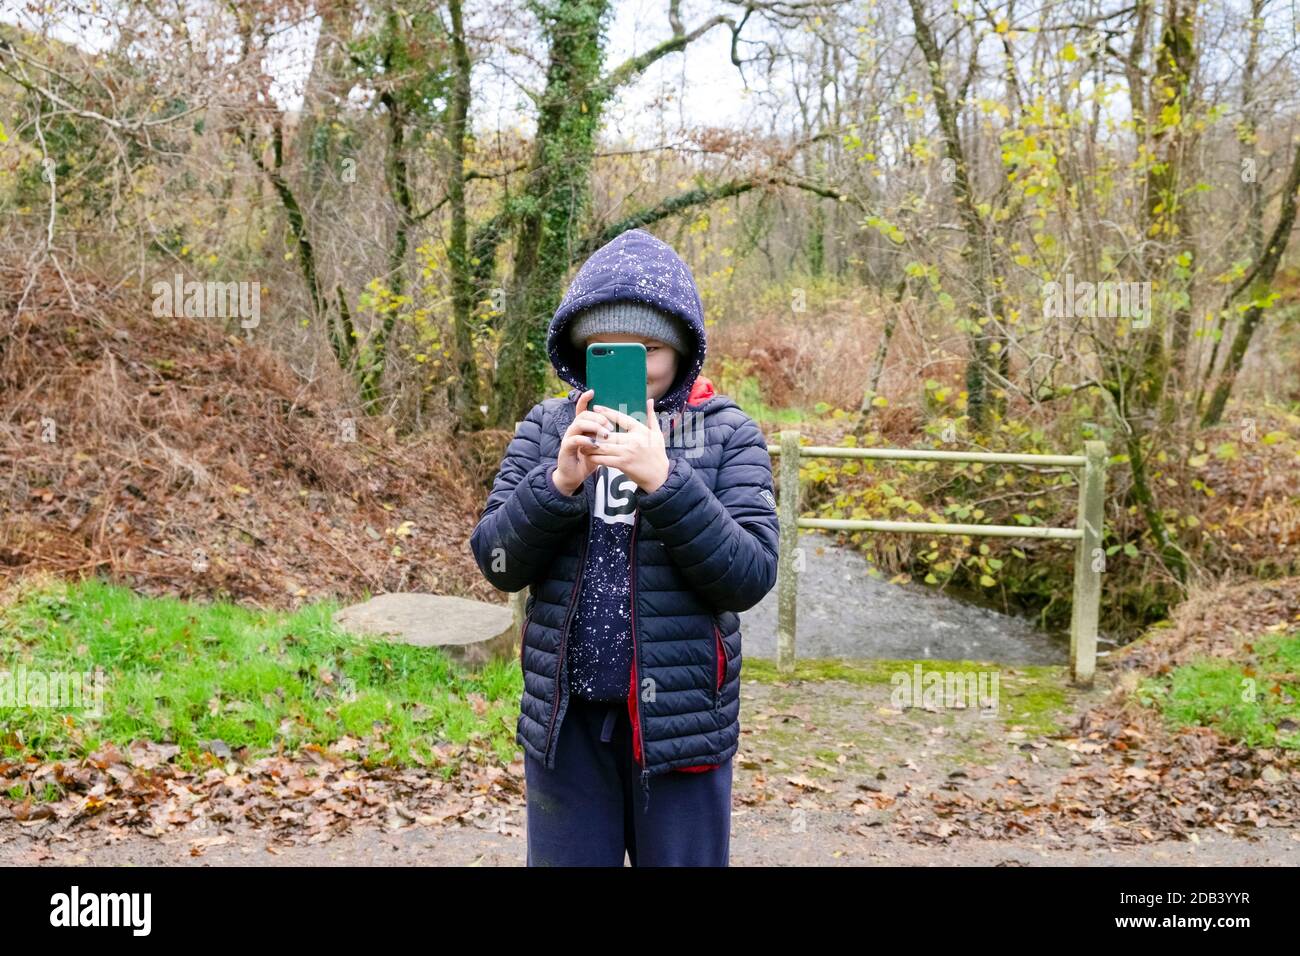 Enfant garçon 10 ou 11 prenant des photos avec un mobile téléphone (téléphone cellulaire) pendant une promenade en automne portant un sweat à capuche et Veste d'hiver pays de Galles Royaume-Uni KATHY DEWITT Banque D'Images